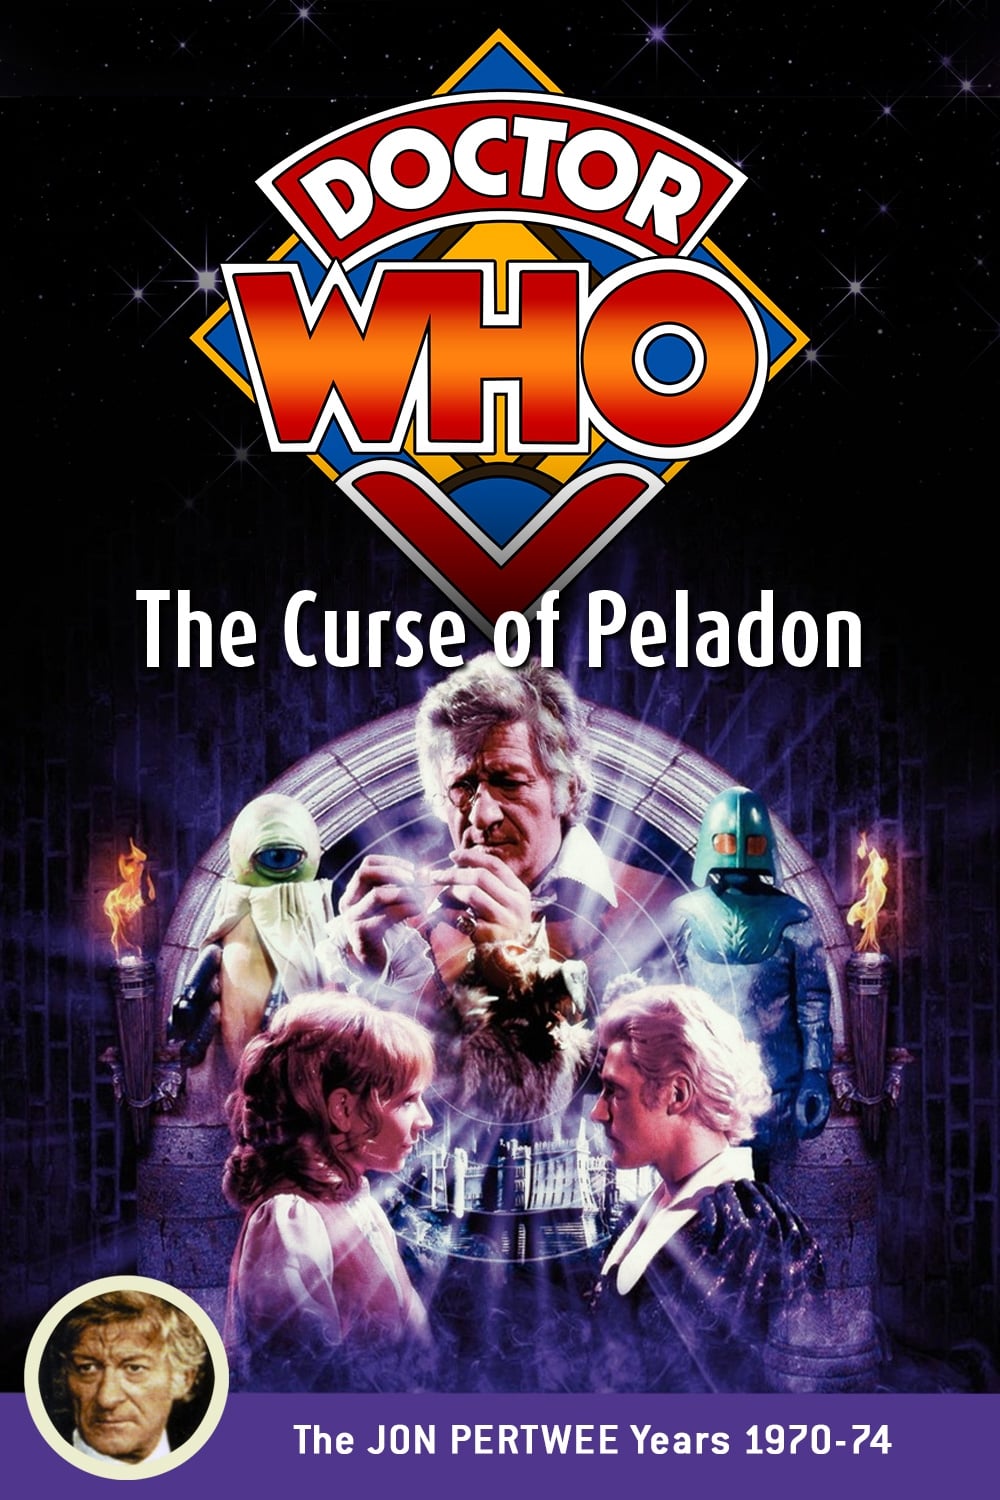 Doctor Who: The Curse of Peladon (1972)